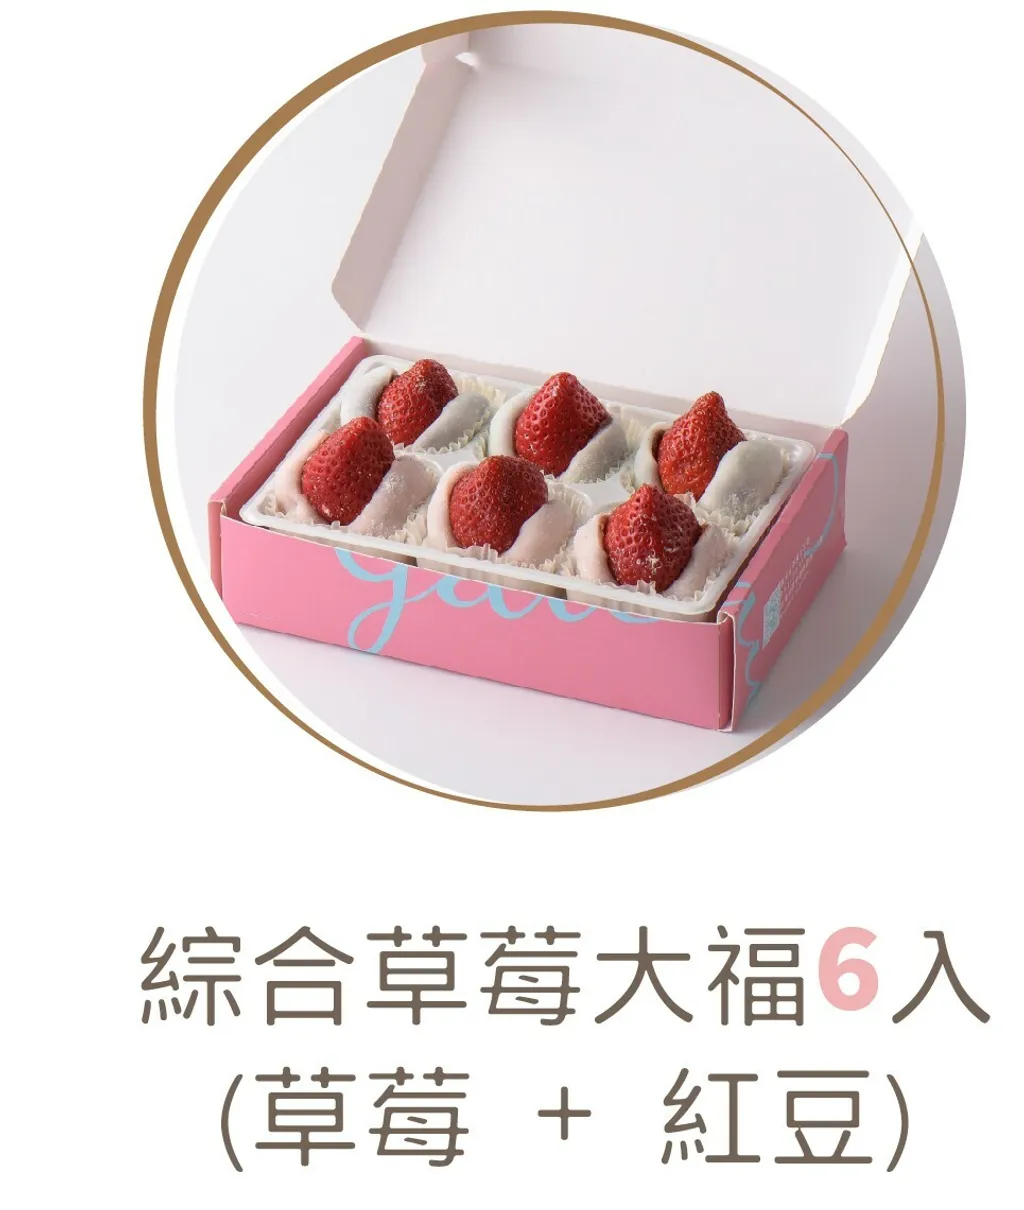 🍓宅配免運組🍓【栗卡朵】任選草莓大福3盒+寶盒蛋糕2盒(宅配免運)